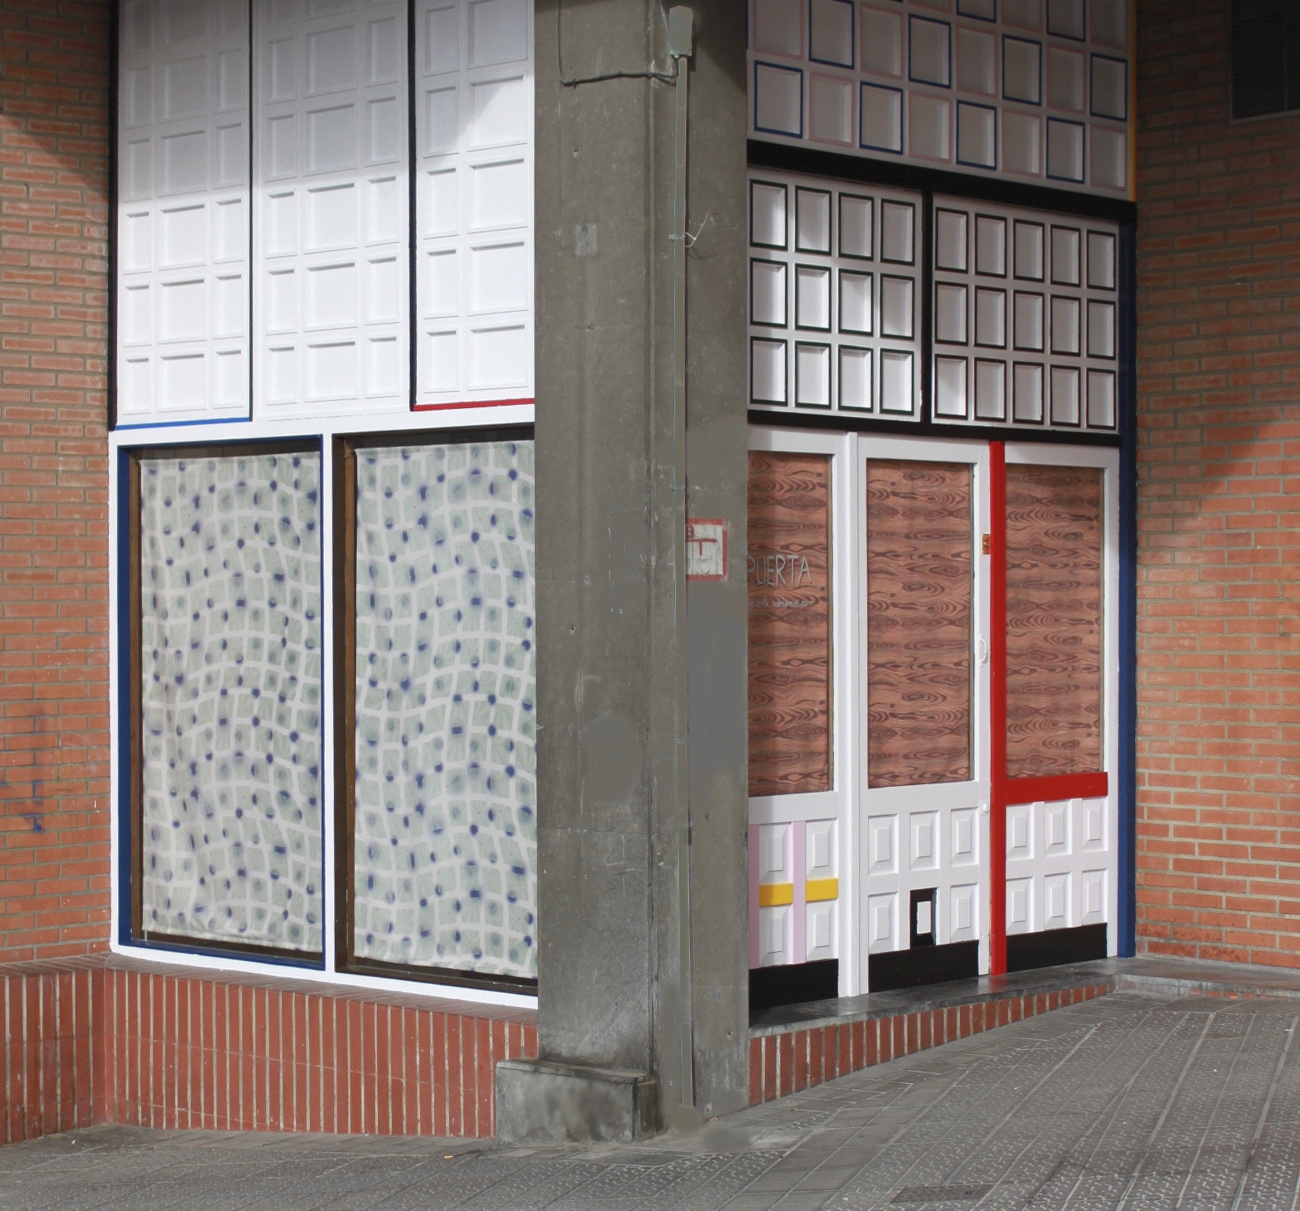 Espacio Puerta. Bilbao 2015. by Malús Arbide - Creative Work - $i